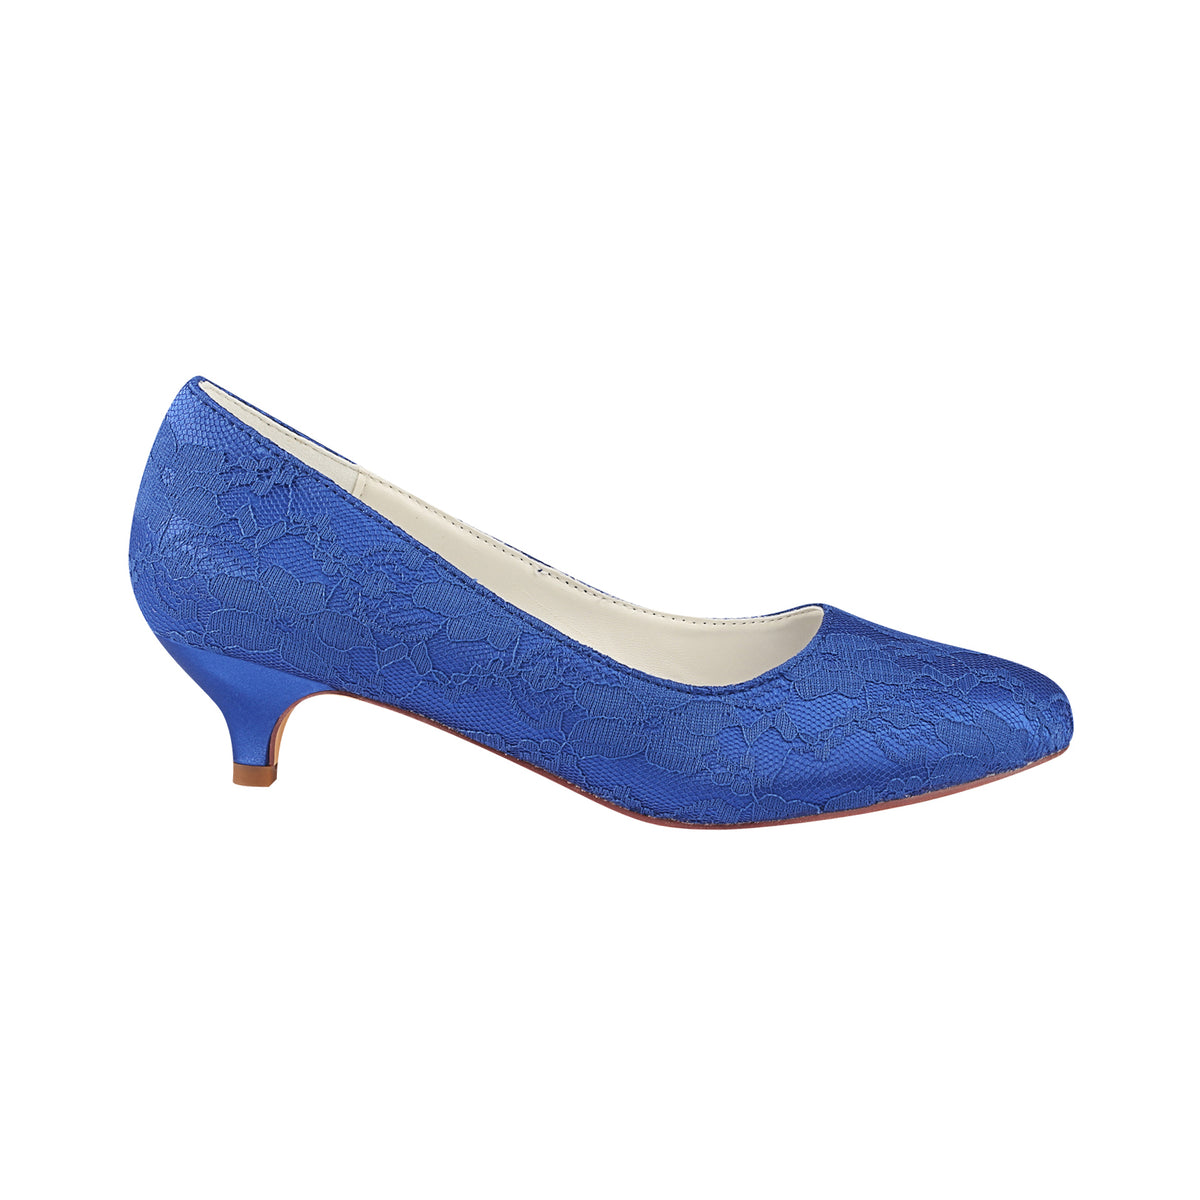 Royal Blue Lace Wedding Shoes, Best Low Heels Evening Shoe L-921